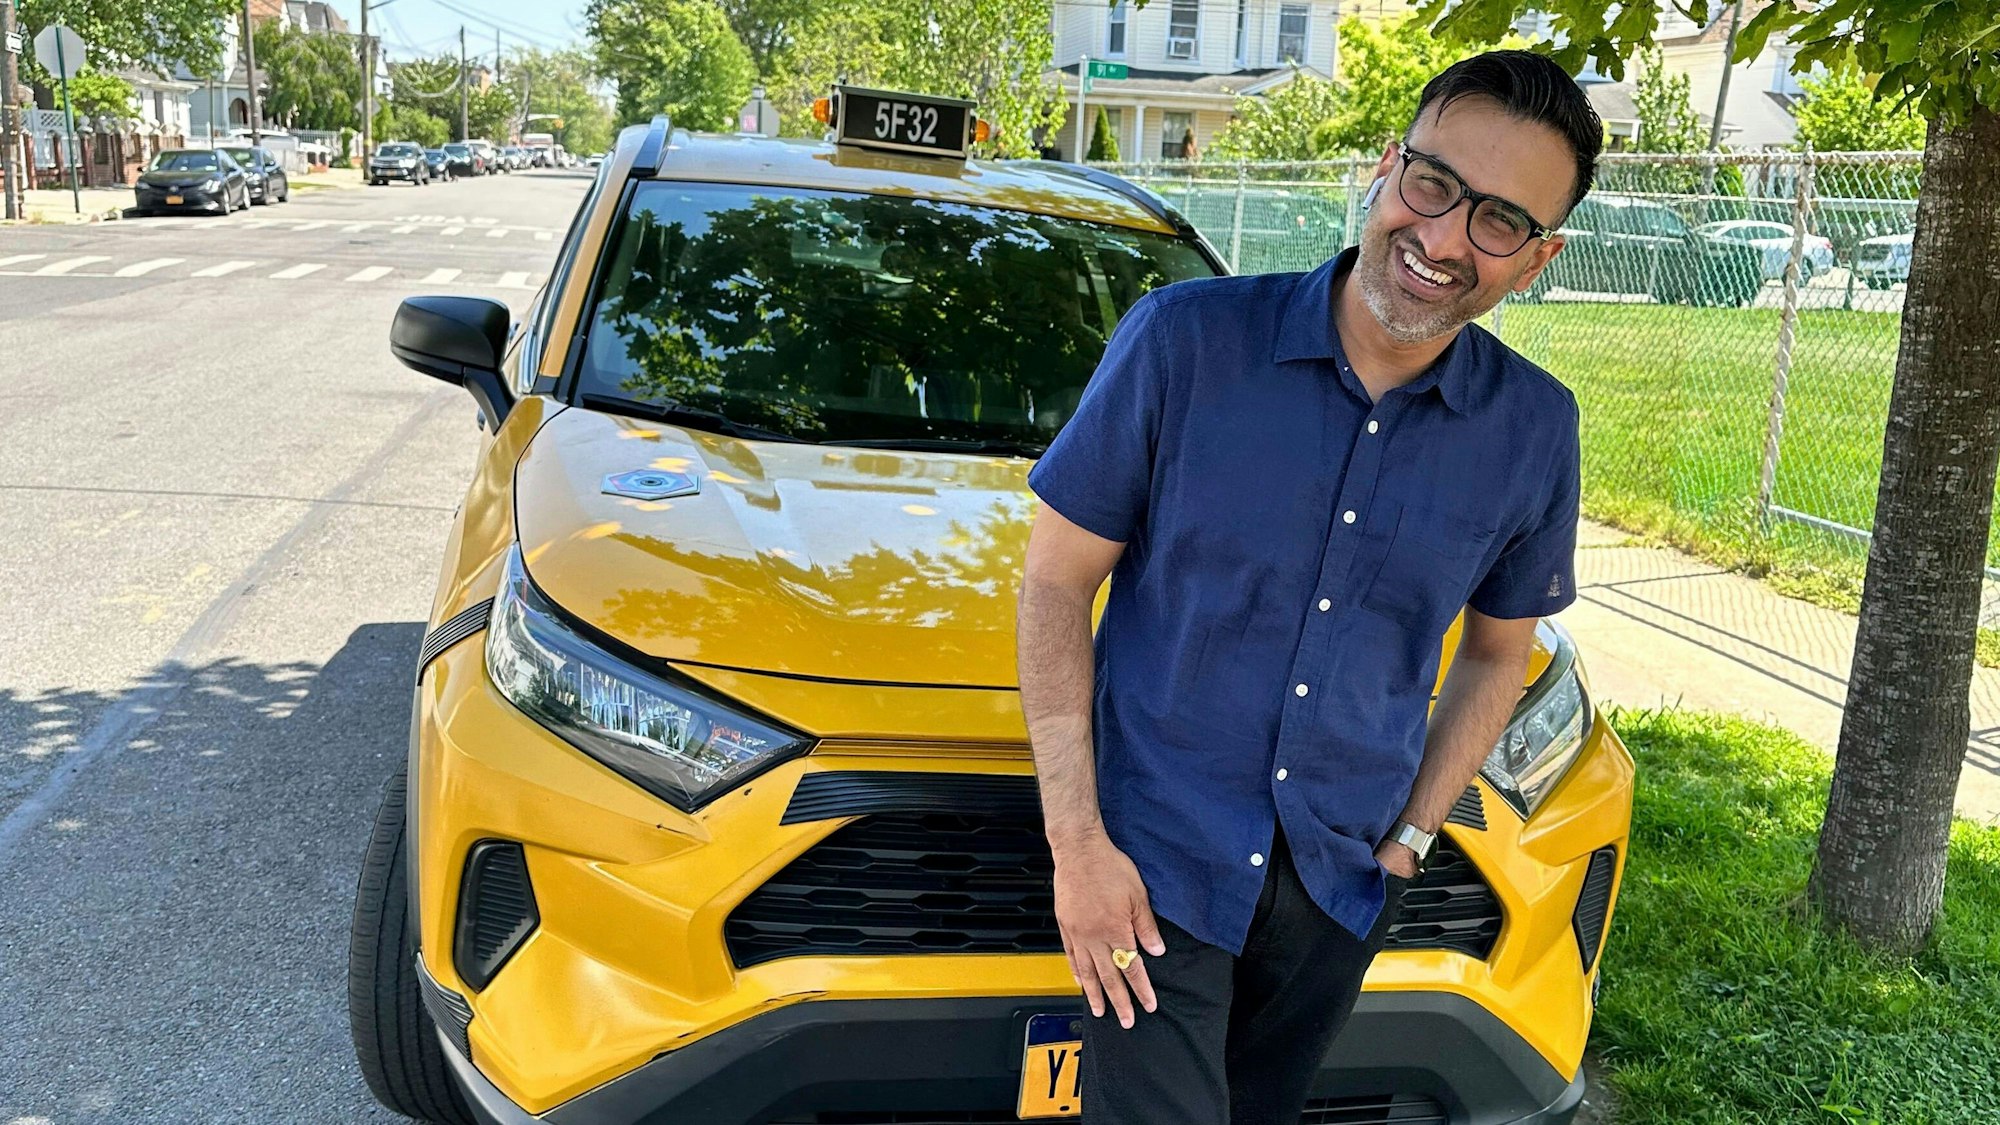 Sukhcharn Singh, Taxifahrer aus New York, steht lächelnd vor seinem Taxi im New Yorker Stadtbezirk Queens.